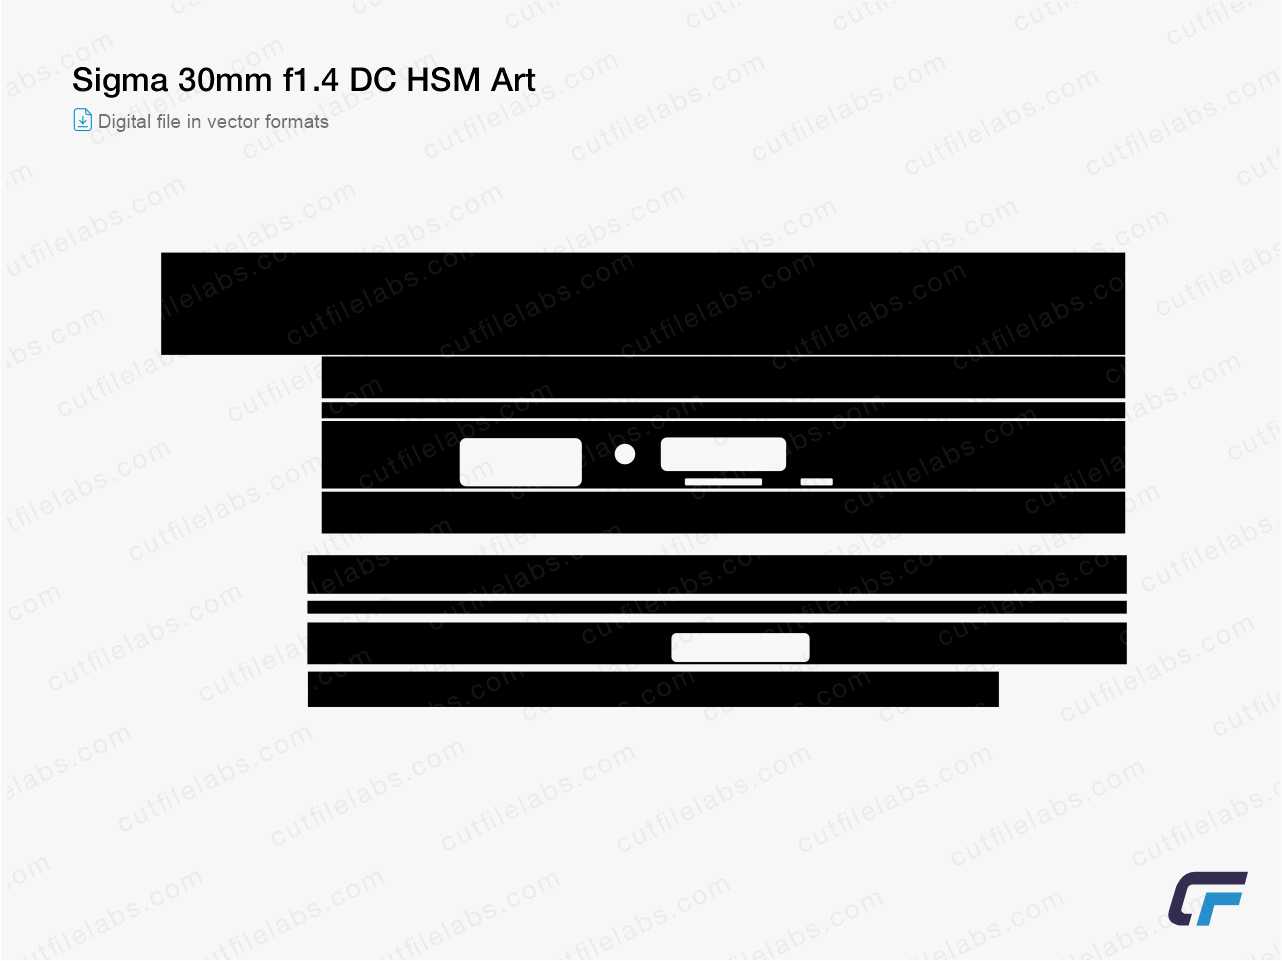 Sigma 30mm f1.4 DC HSM Art (2013) Cut File Template